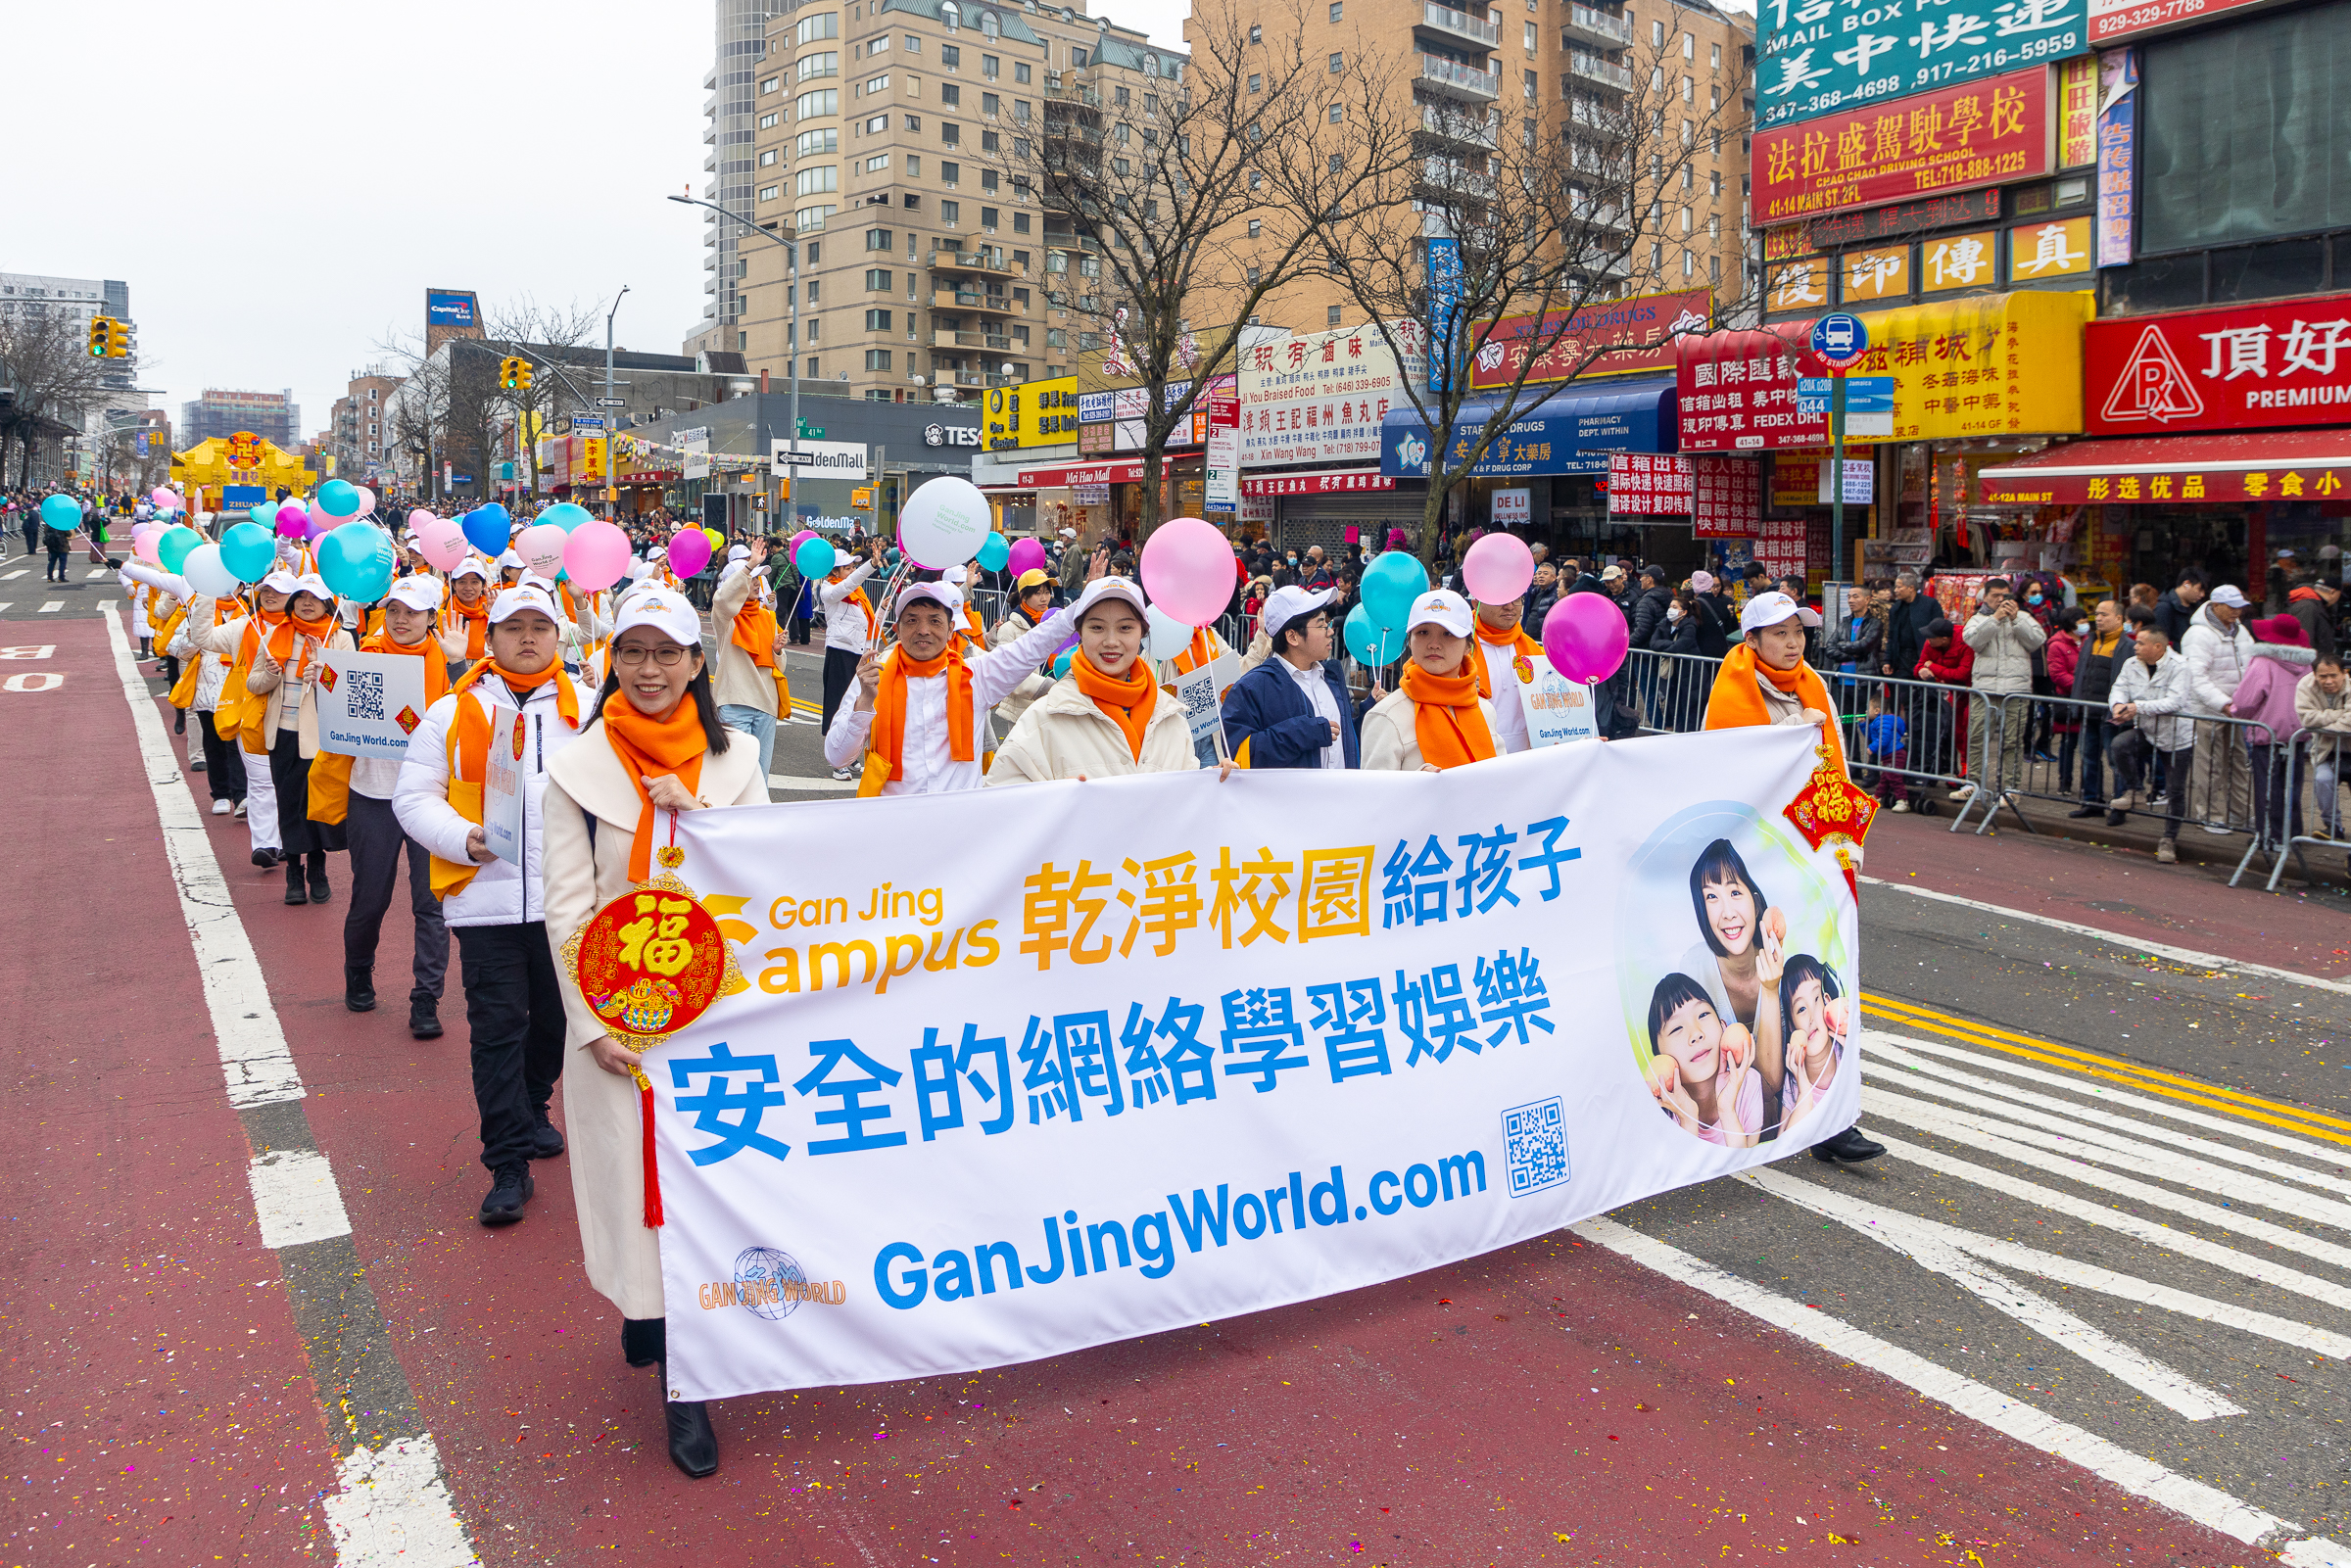 Đoàn Gan Jing Campus của Gan Jing World đã tham gia Lễ diễn hành Tết Nguyên đán ở Flushing, New York, để chúc mừng năm mới. (Ảnh: Mark Zou/Epoch Times)